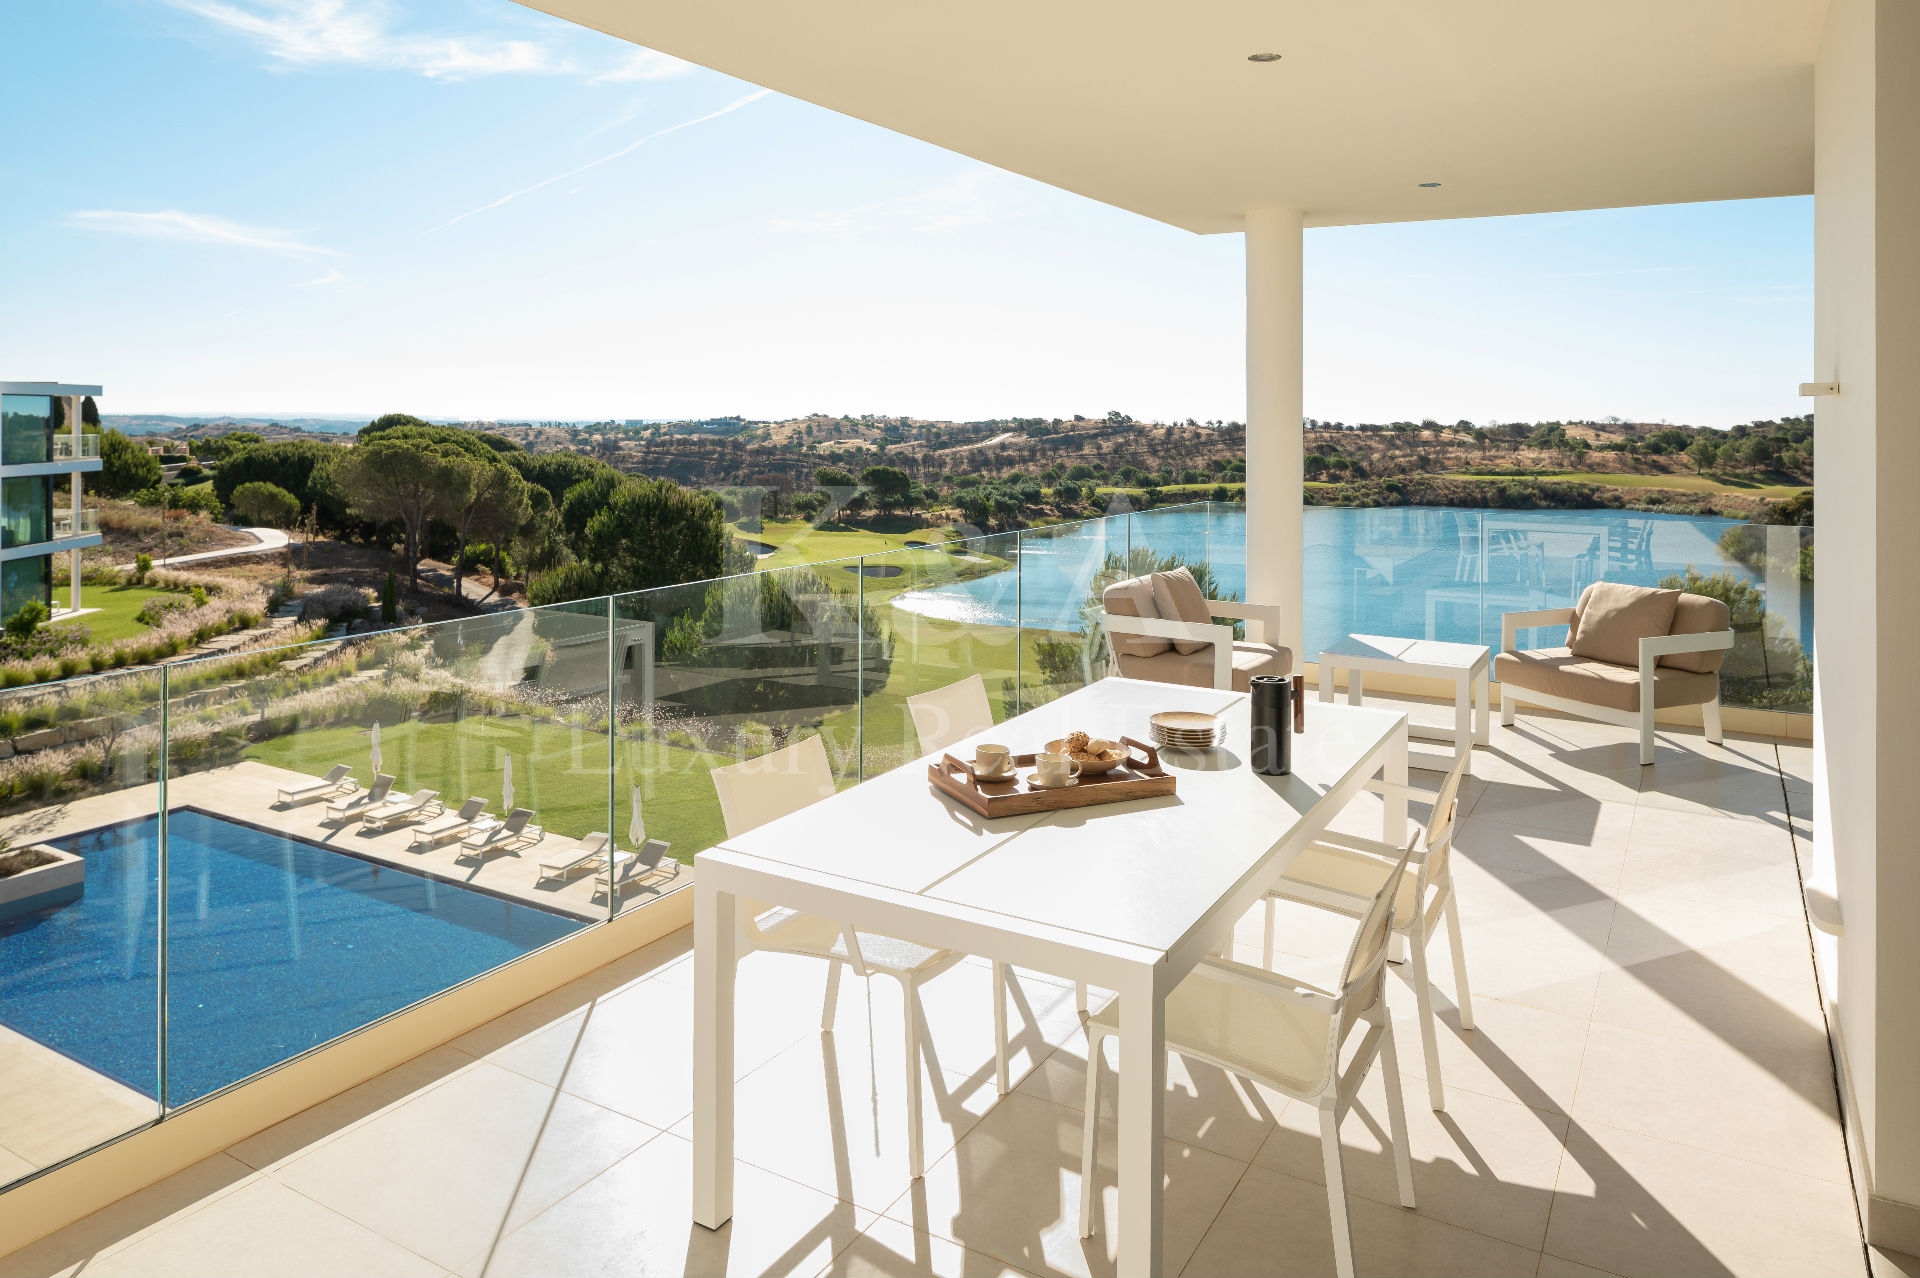 Apartamento T2 em resort exclusivo de golfe, Algarve